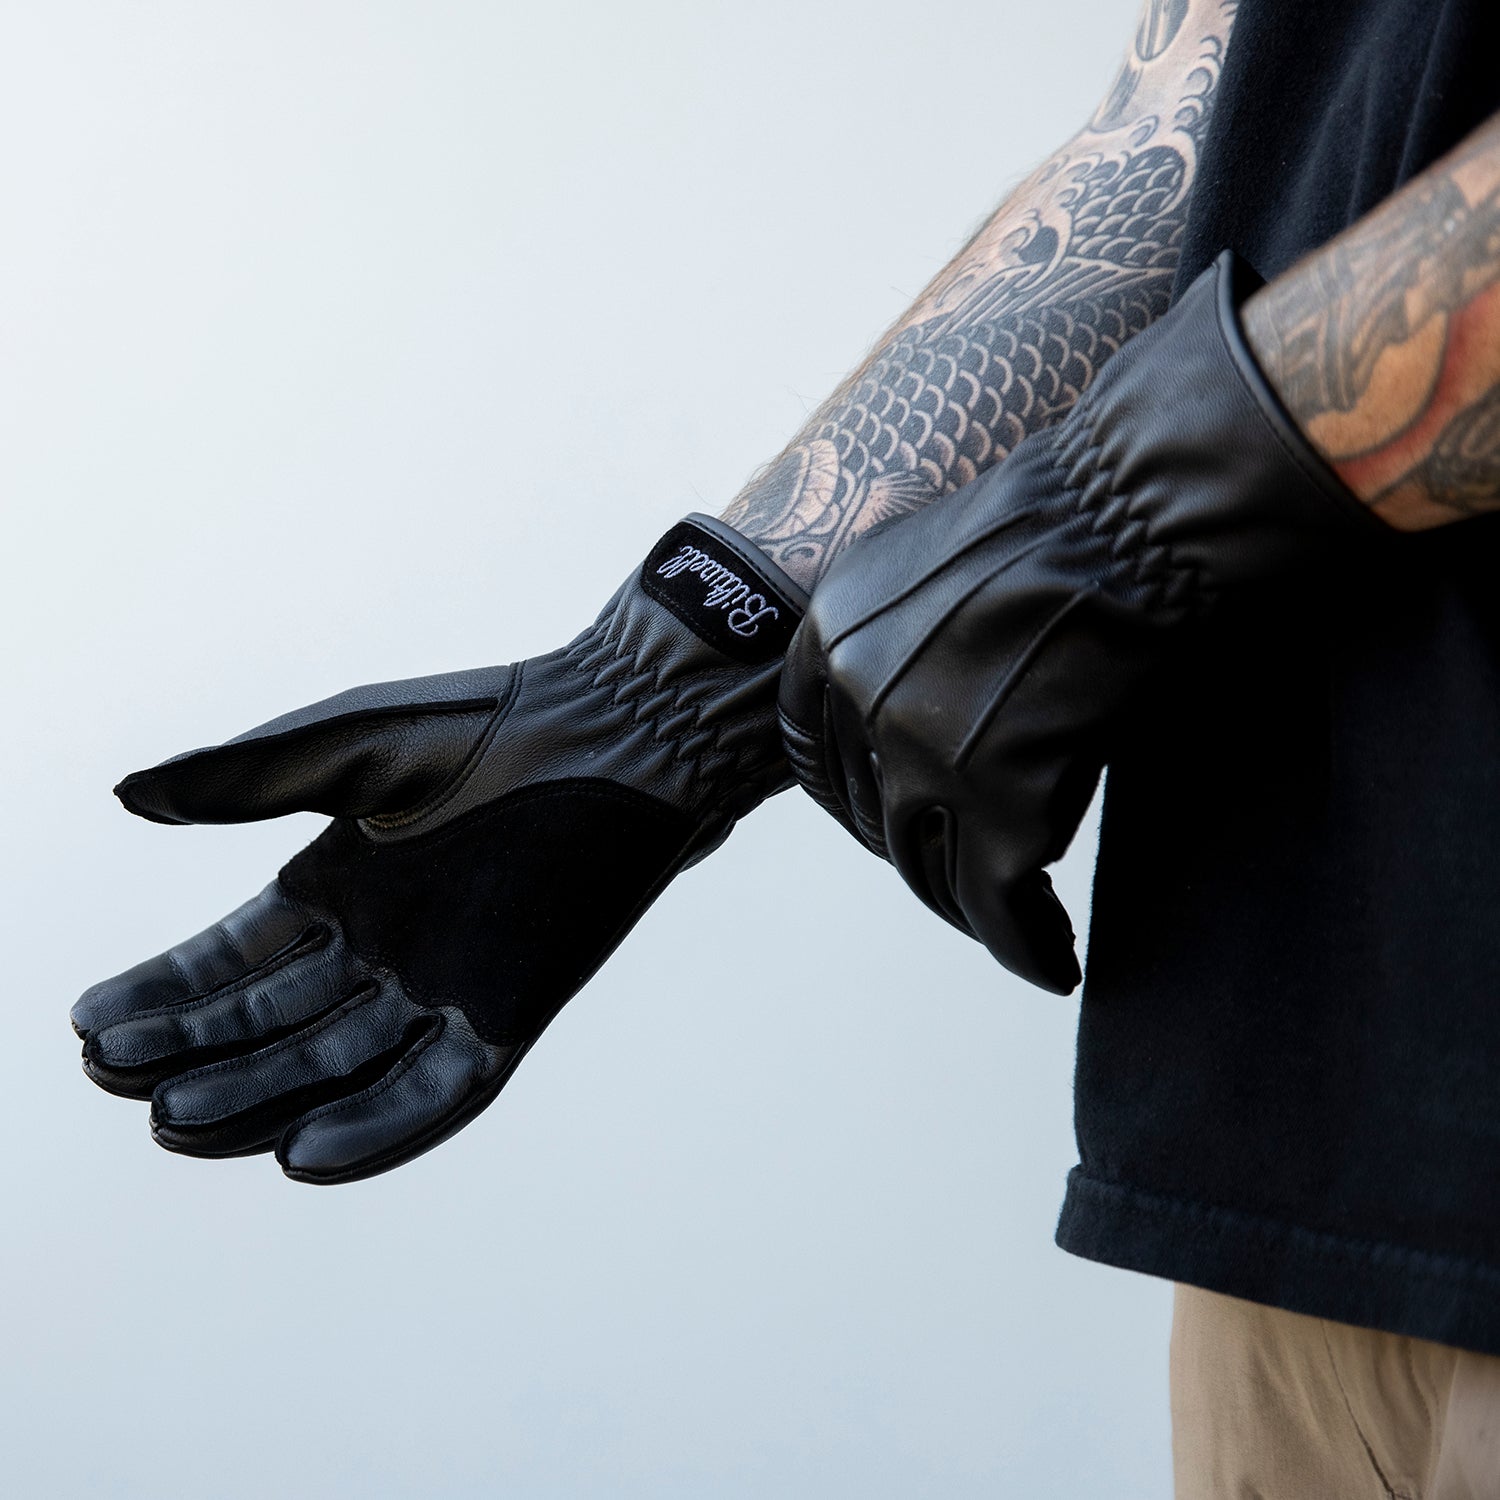 Work Gloves 2.0 - Black